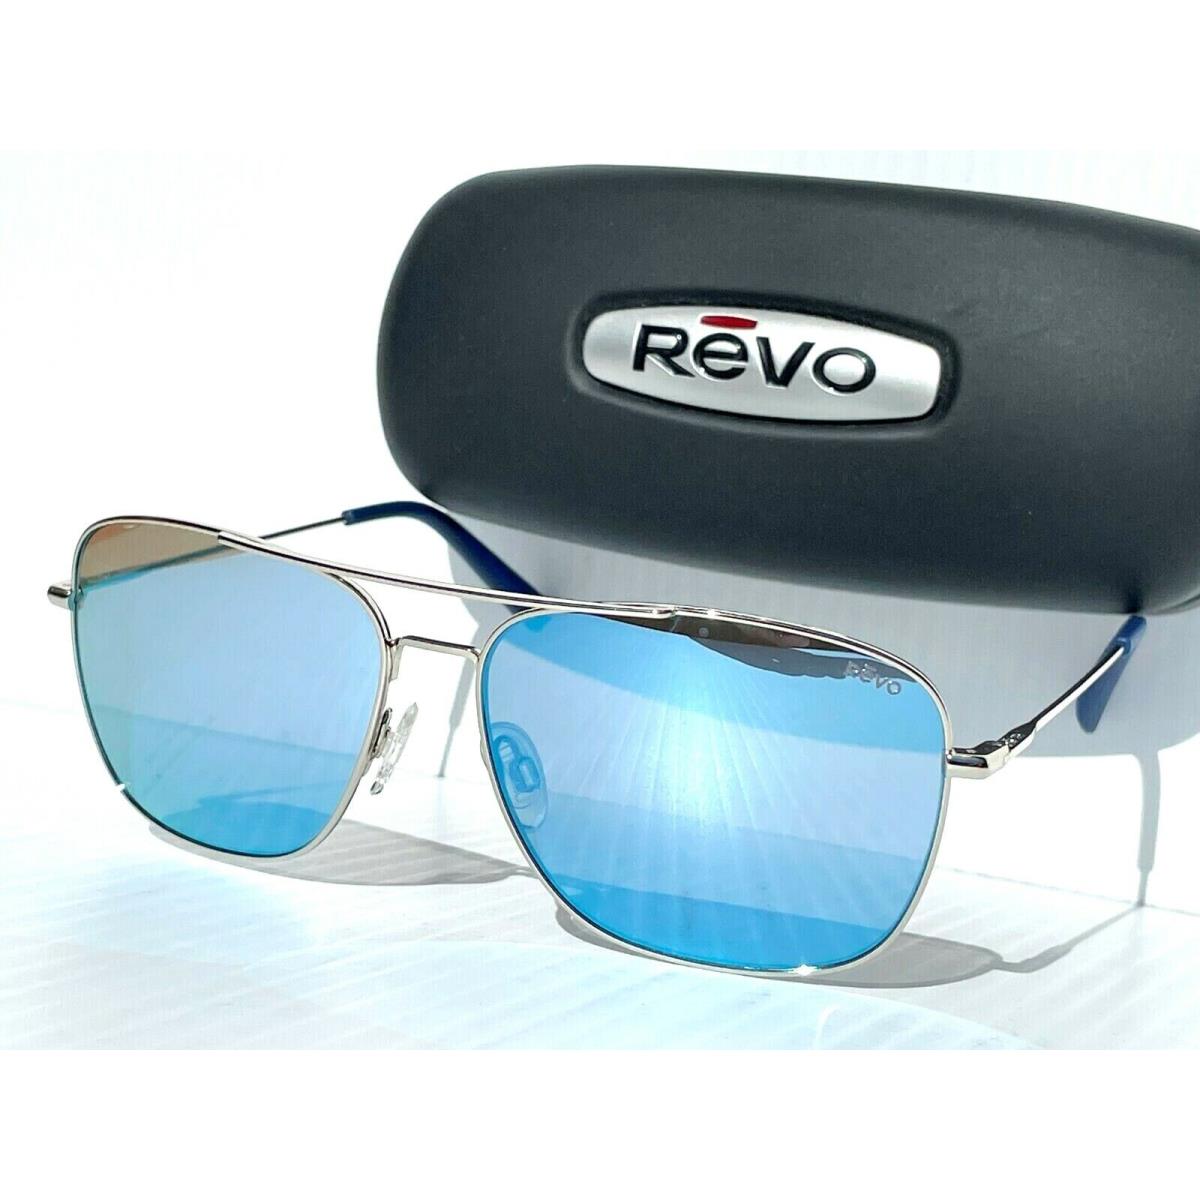 Revo Harbor Polished Chrome Aviator Polarized Blue Lens Sunglass 1082 03 BL